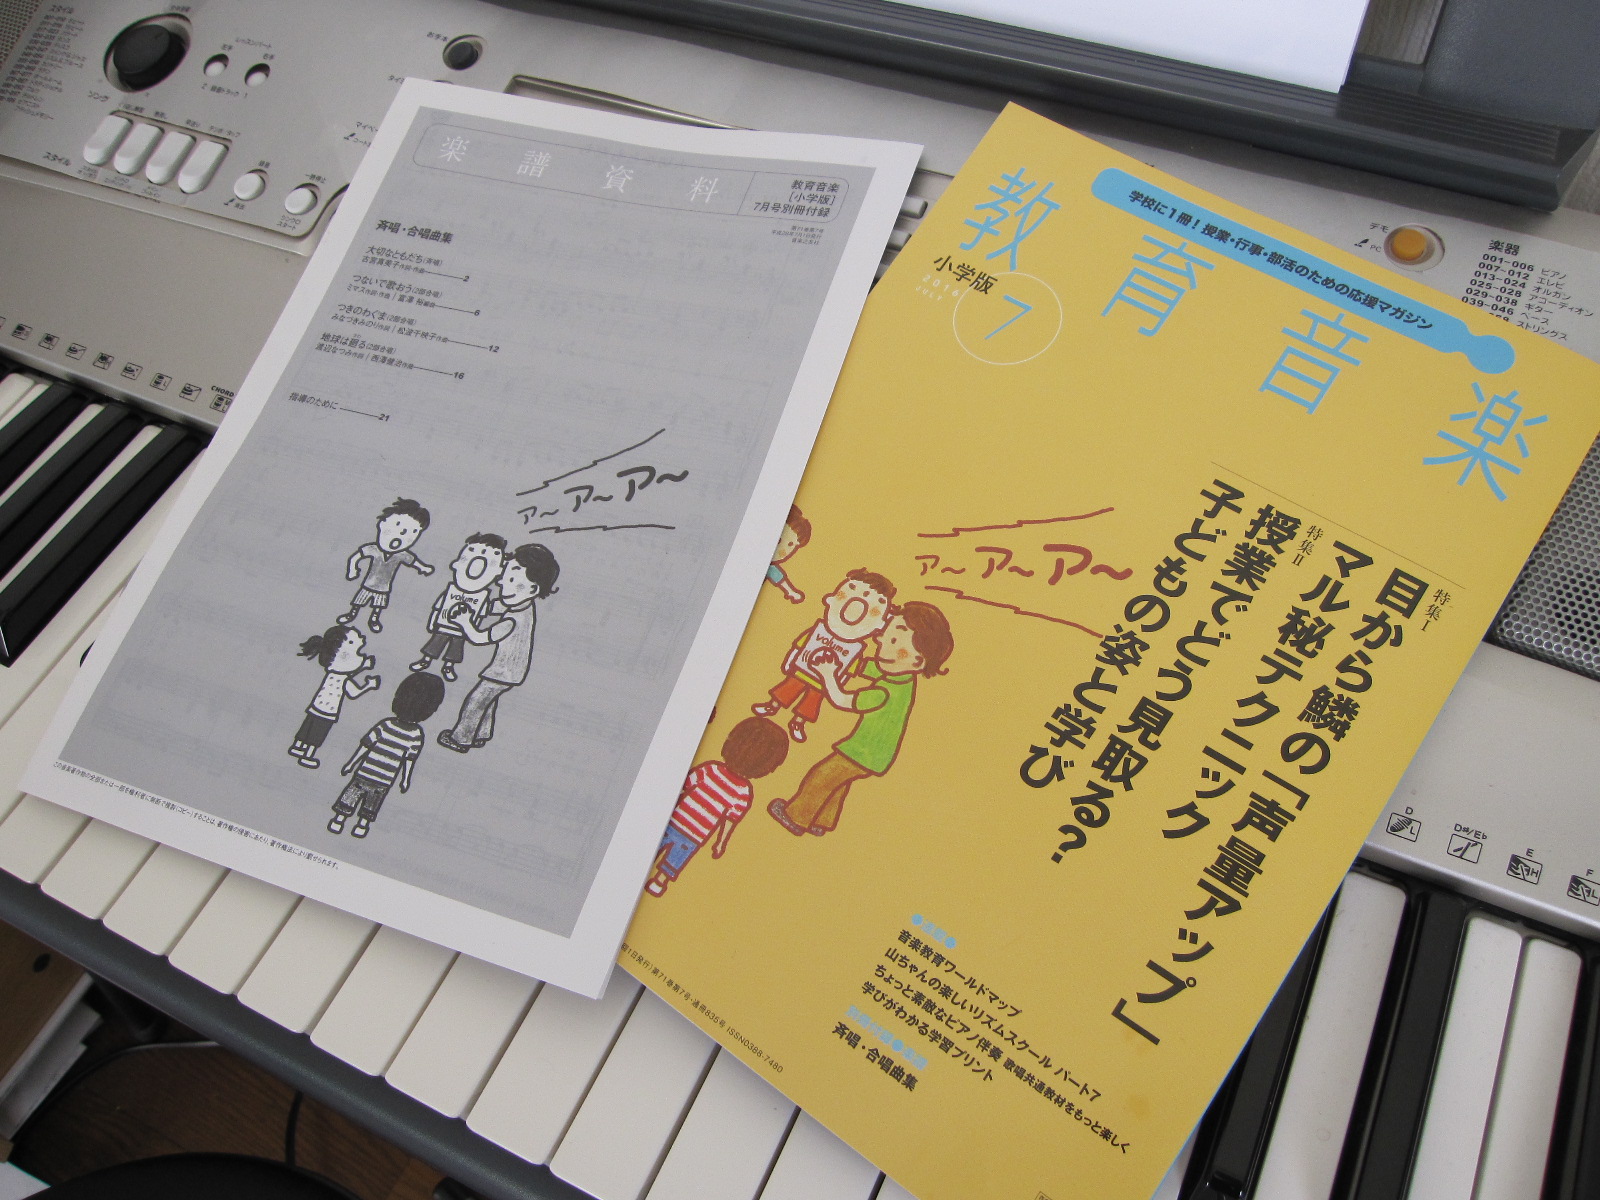 《つないで歌おう》の合唱譜が掲載されている『教育音楽・小学版』2016年7月号